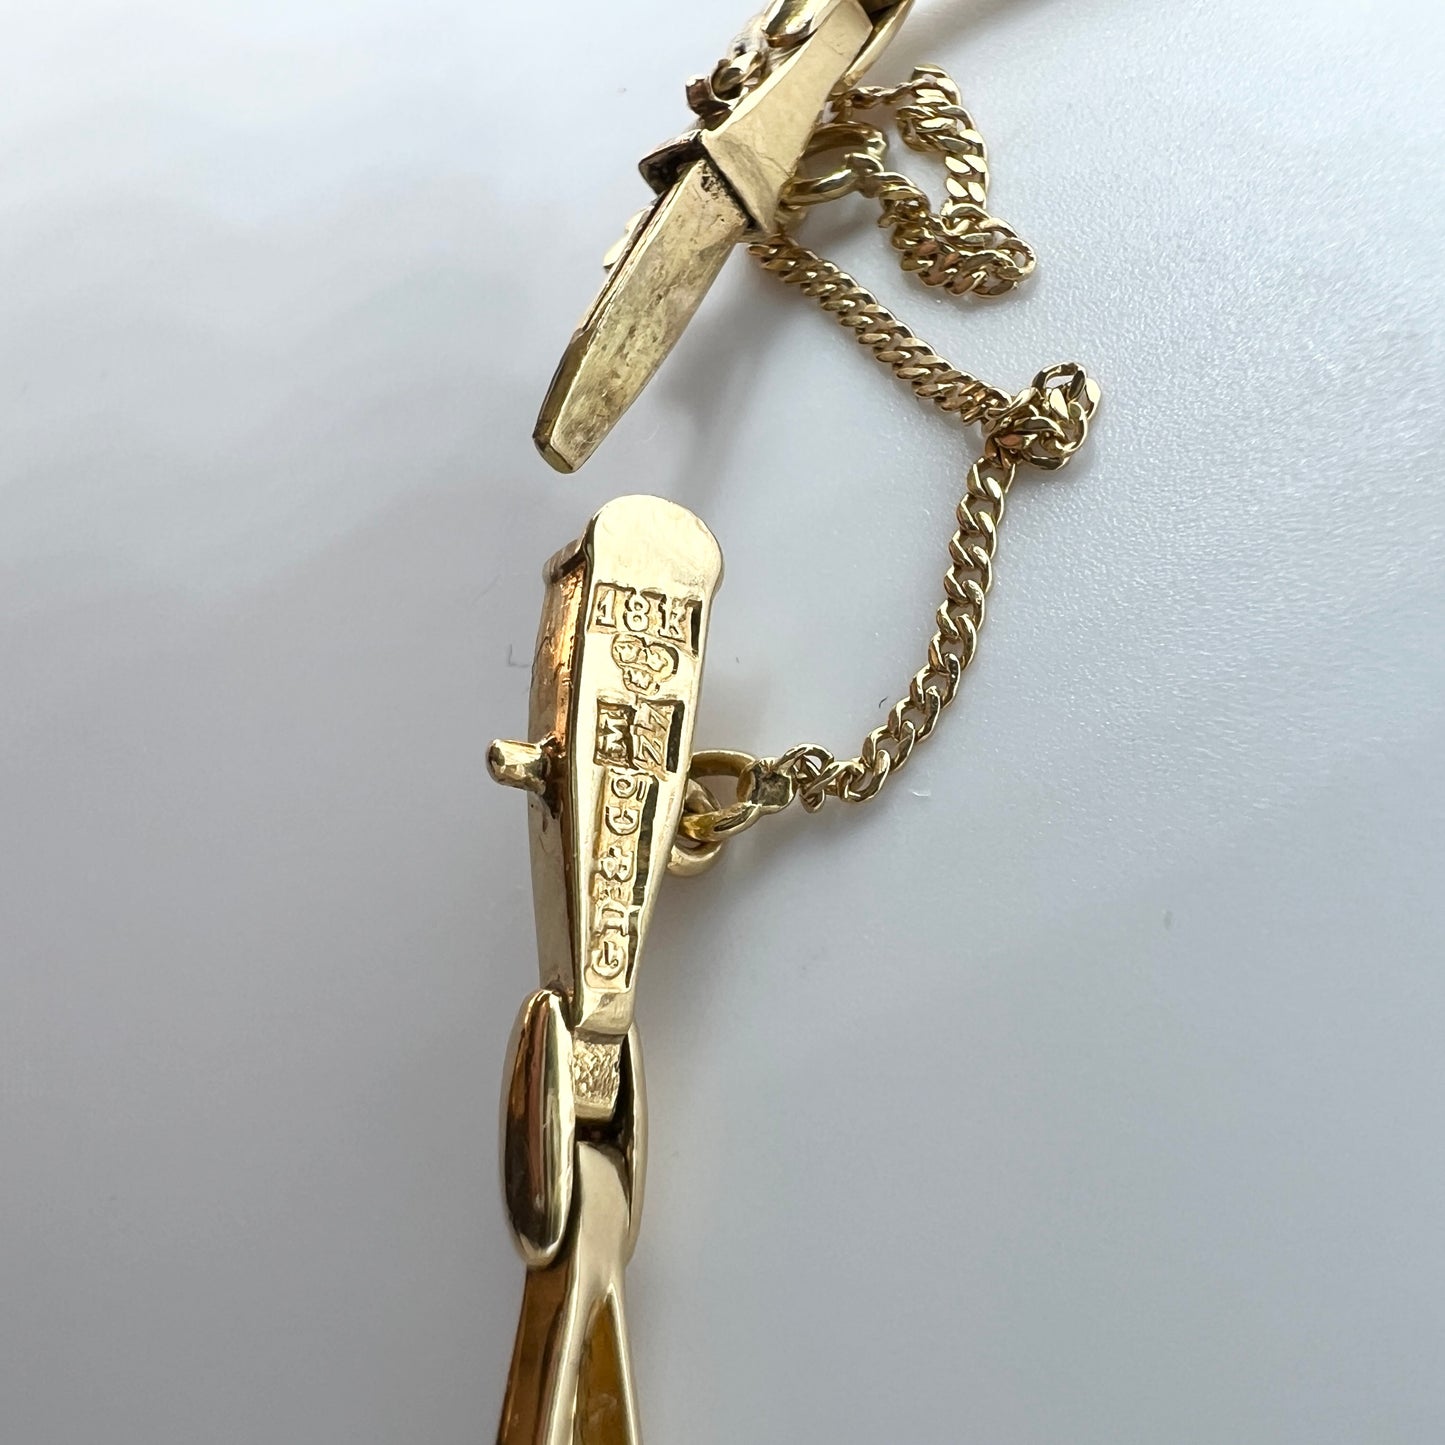 G Dahlgren, Sweden 1927. Art Deco 18k Gold Pearl Bracelet.